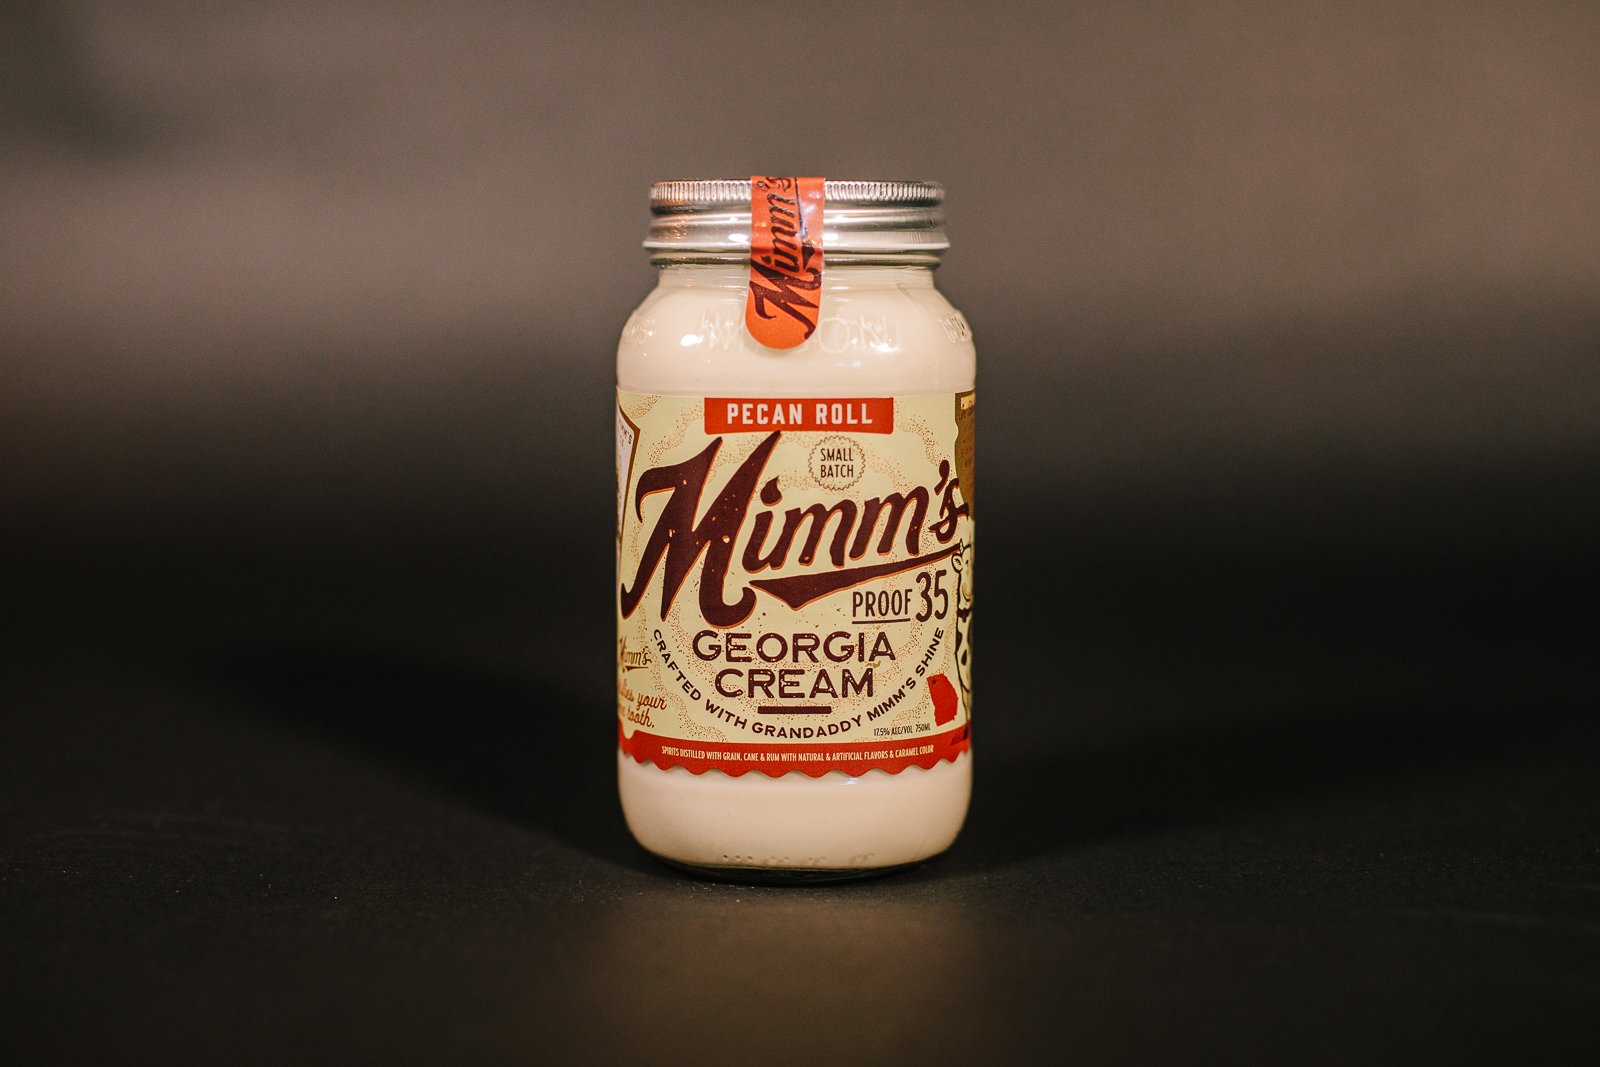 35 Proof Georgia Cream Pecan Roll